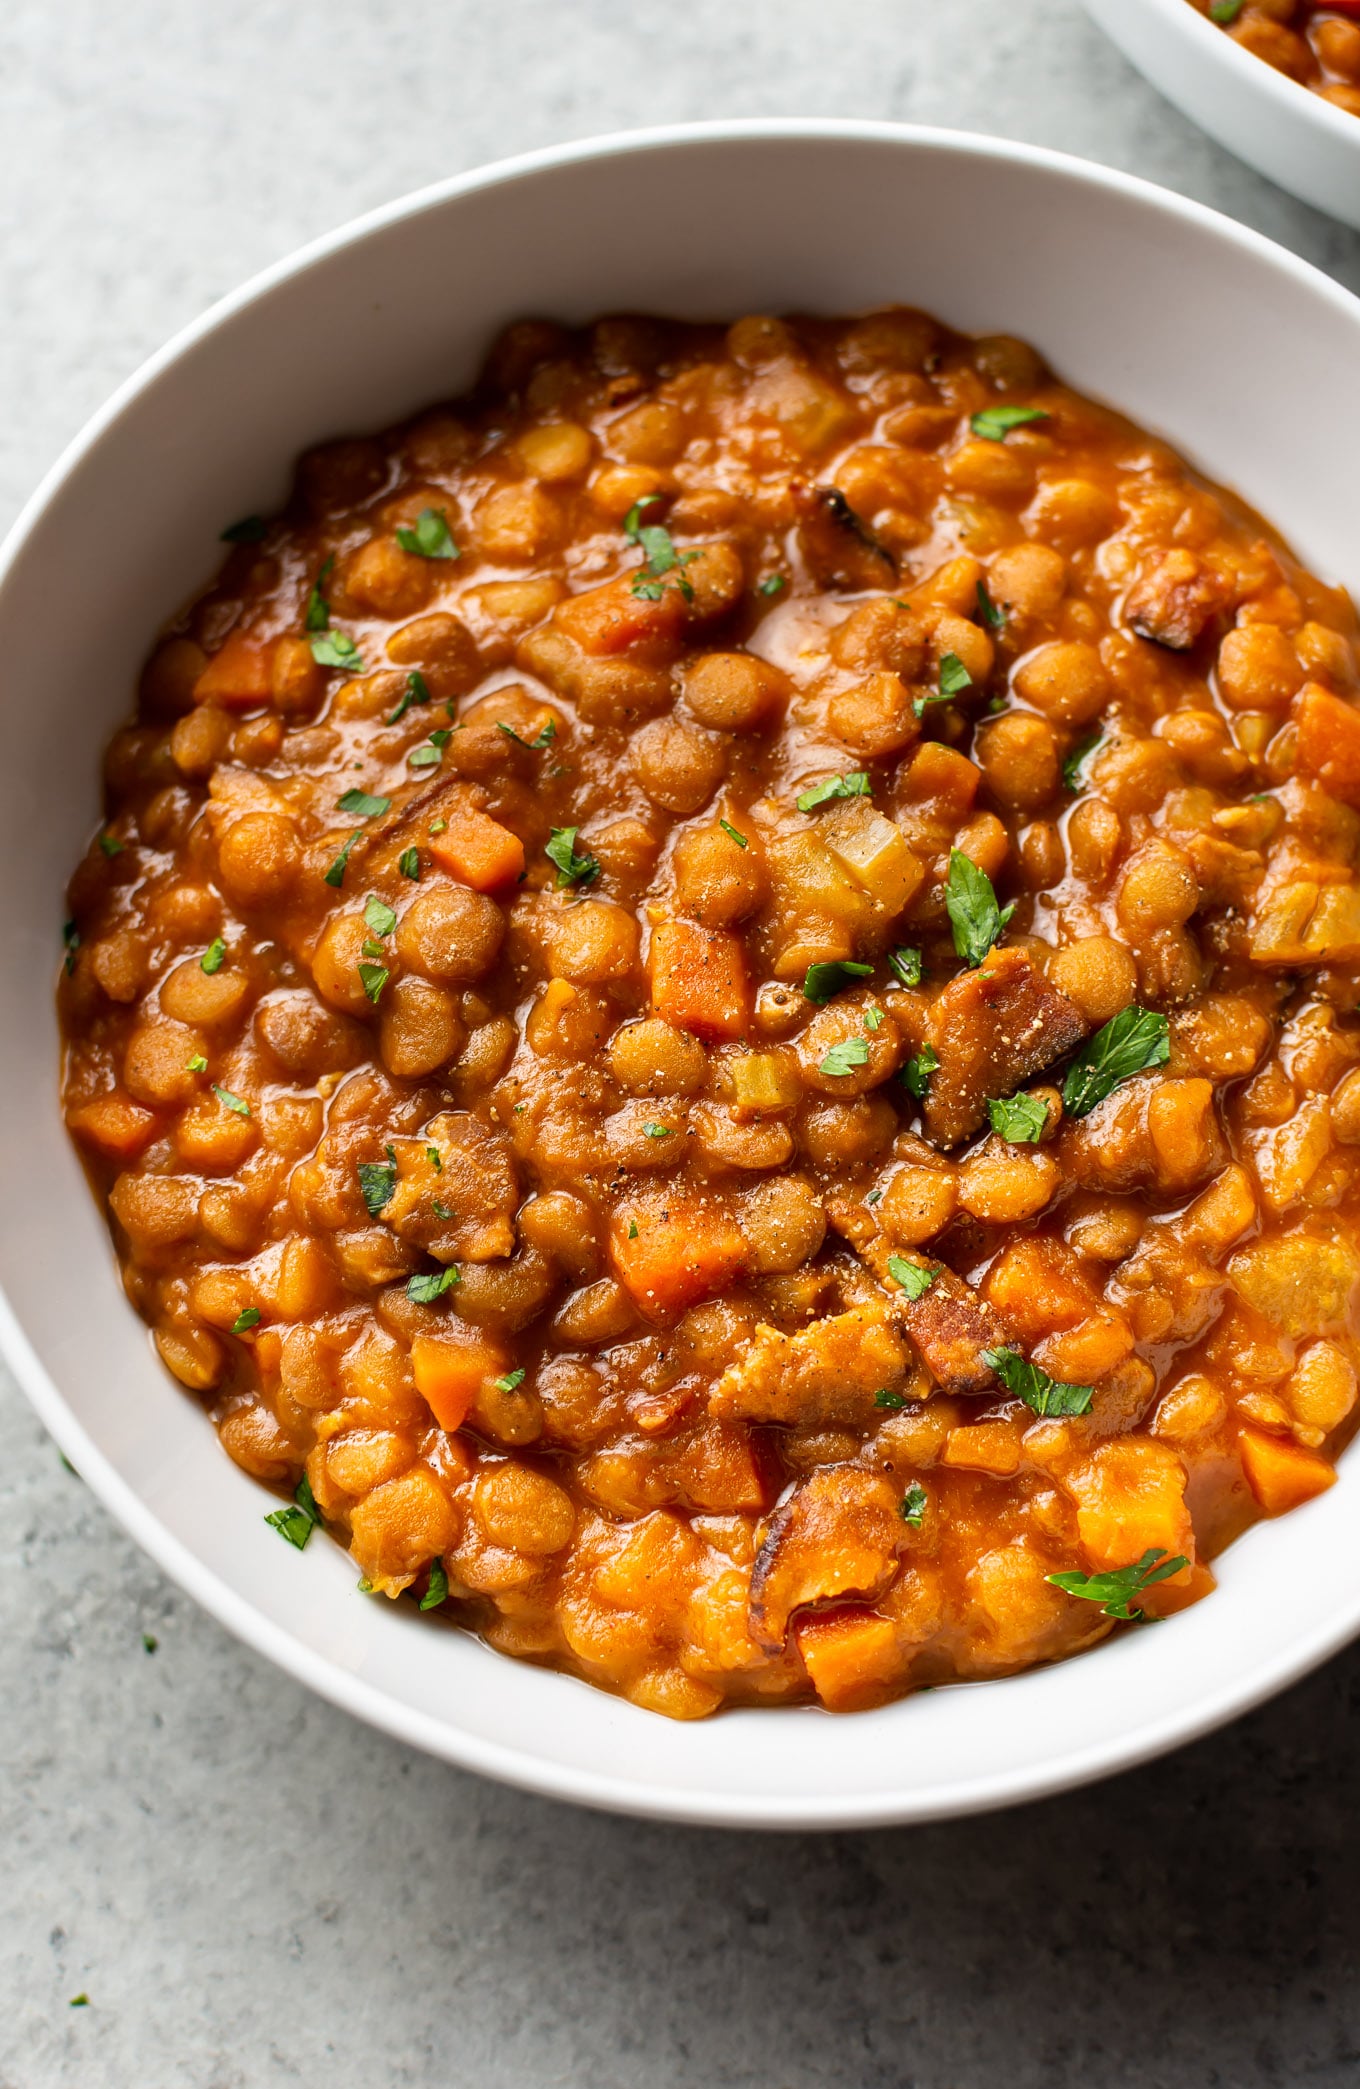 https://www.saltandlavender.com/wp-content/uploads/2020/10/instant-pot-lentil-stew-2.jpg